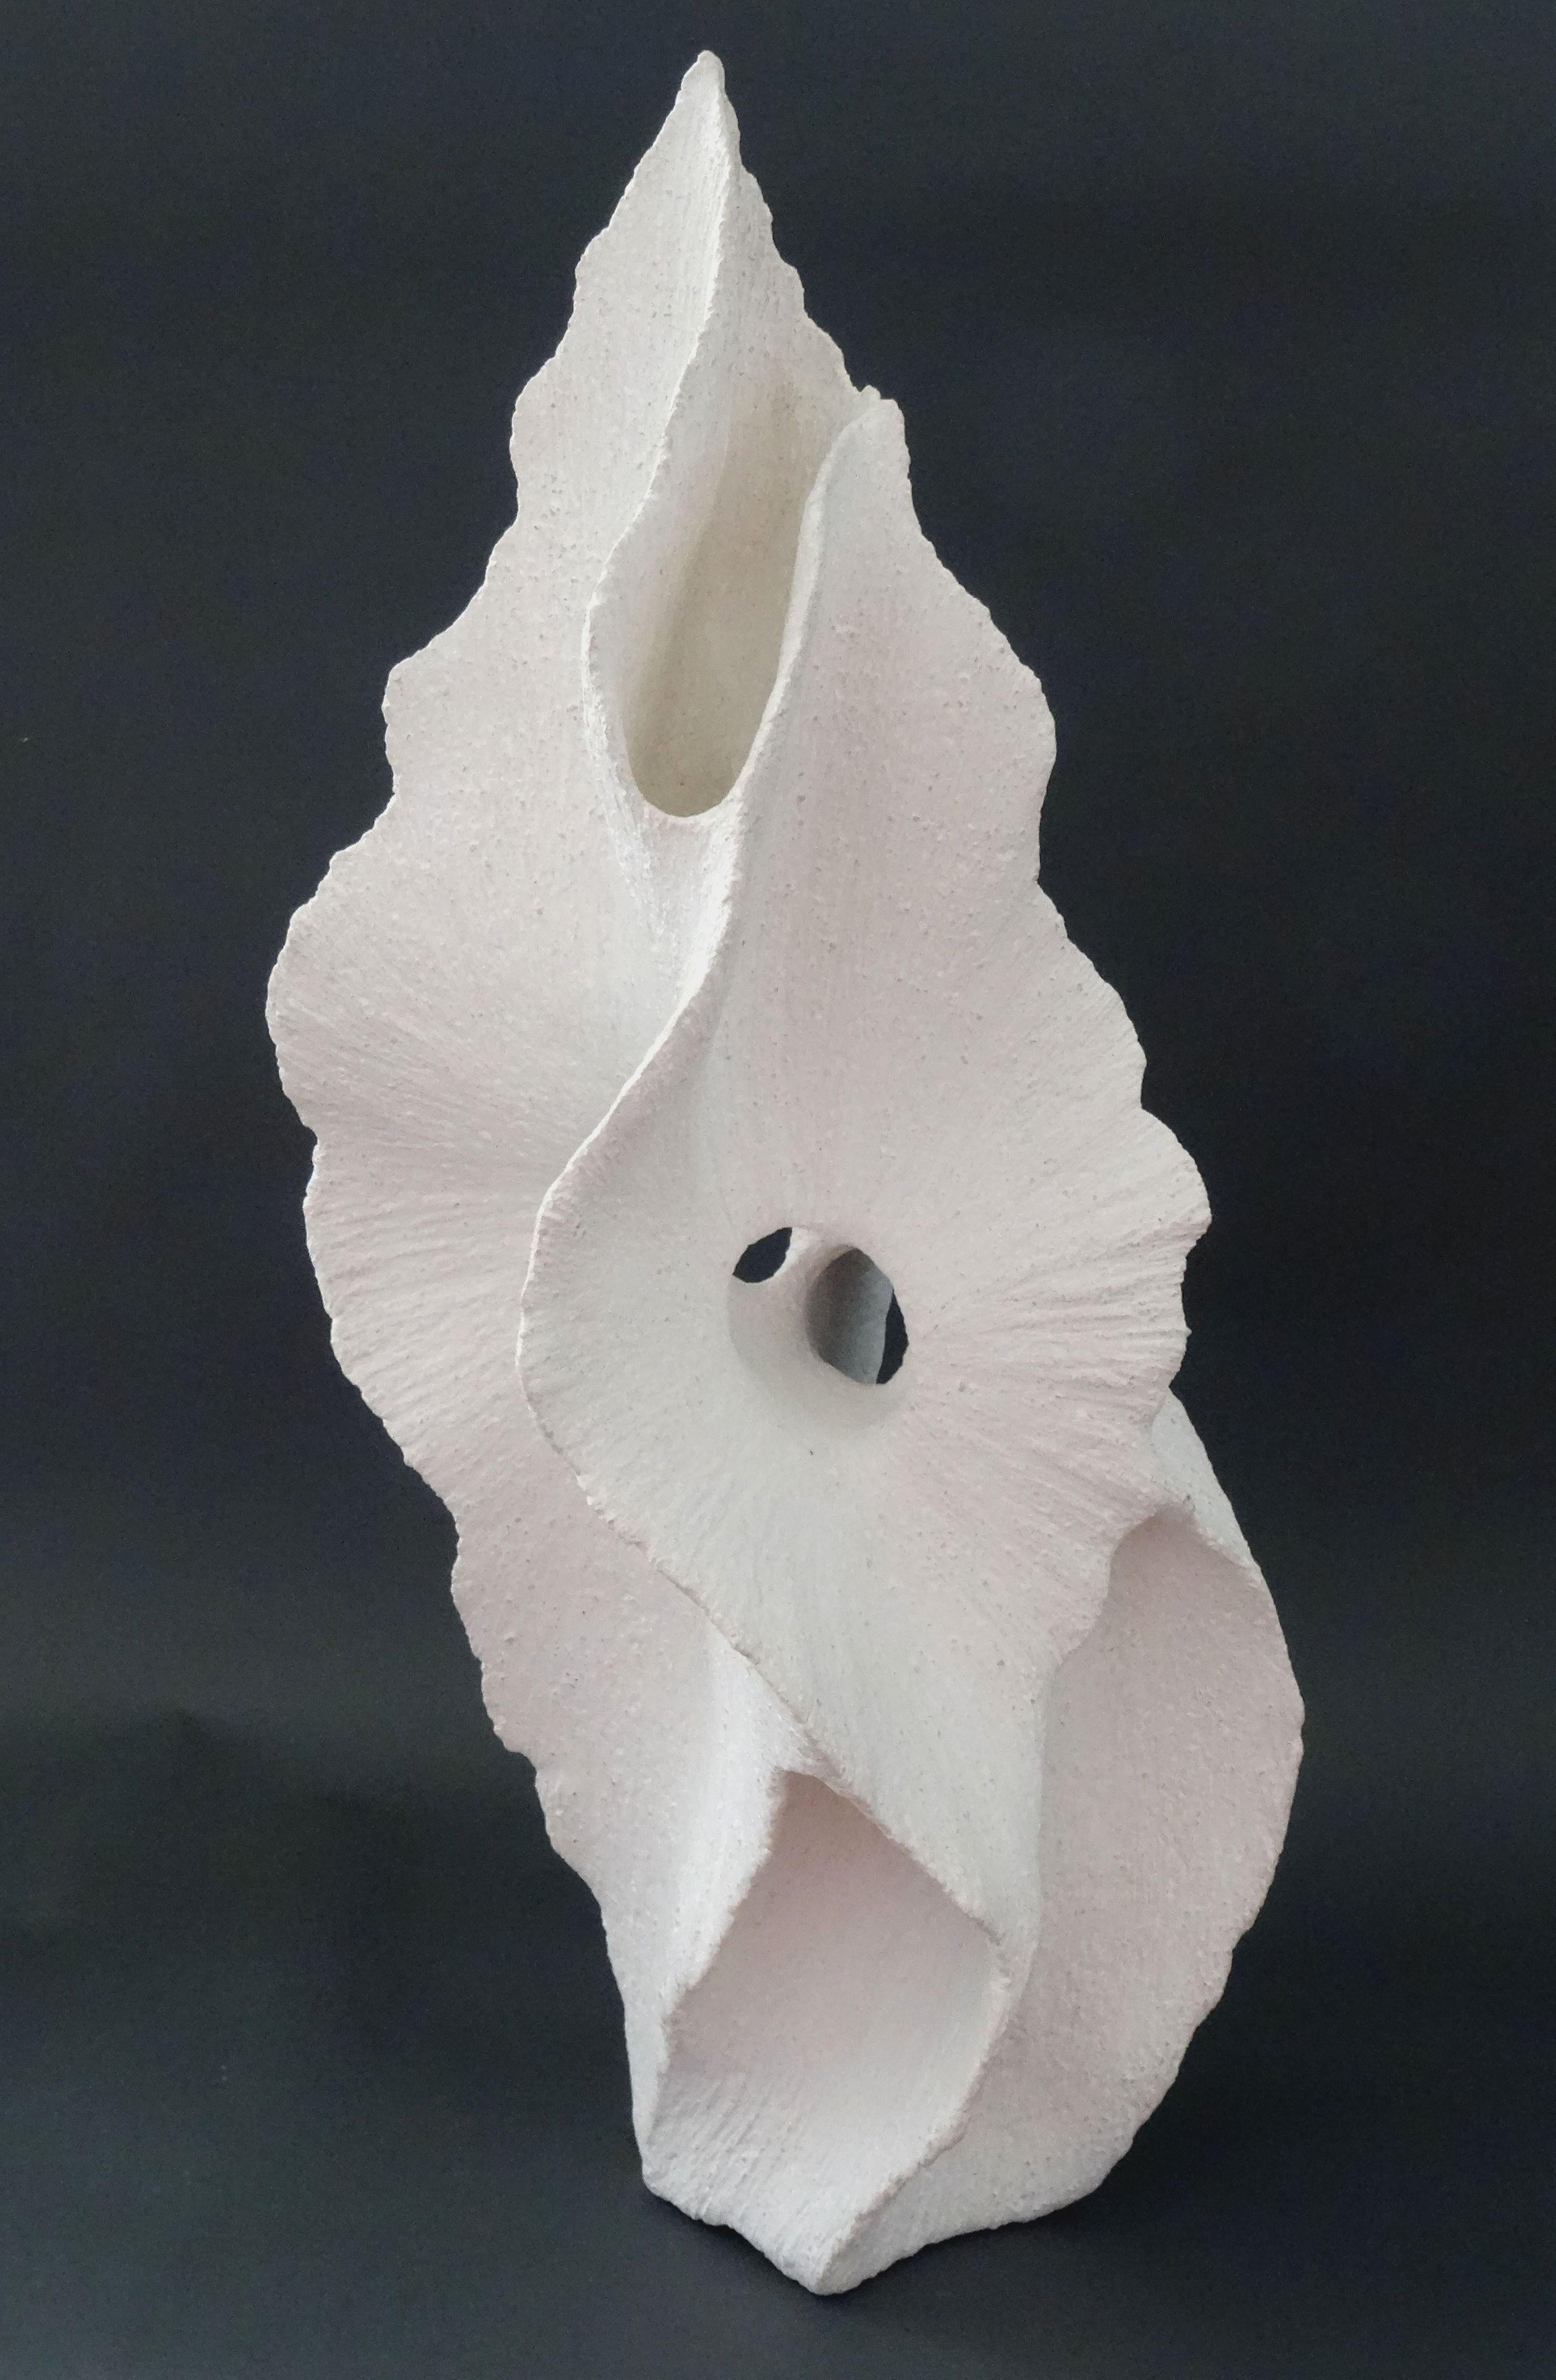 Elina Titane  Abstract Sculpture - Arise. Stone mass, porcelain, h 57 cm; W 21 cm; D 25 cm